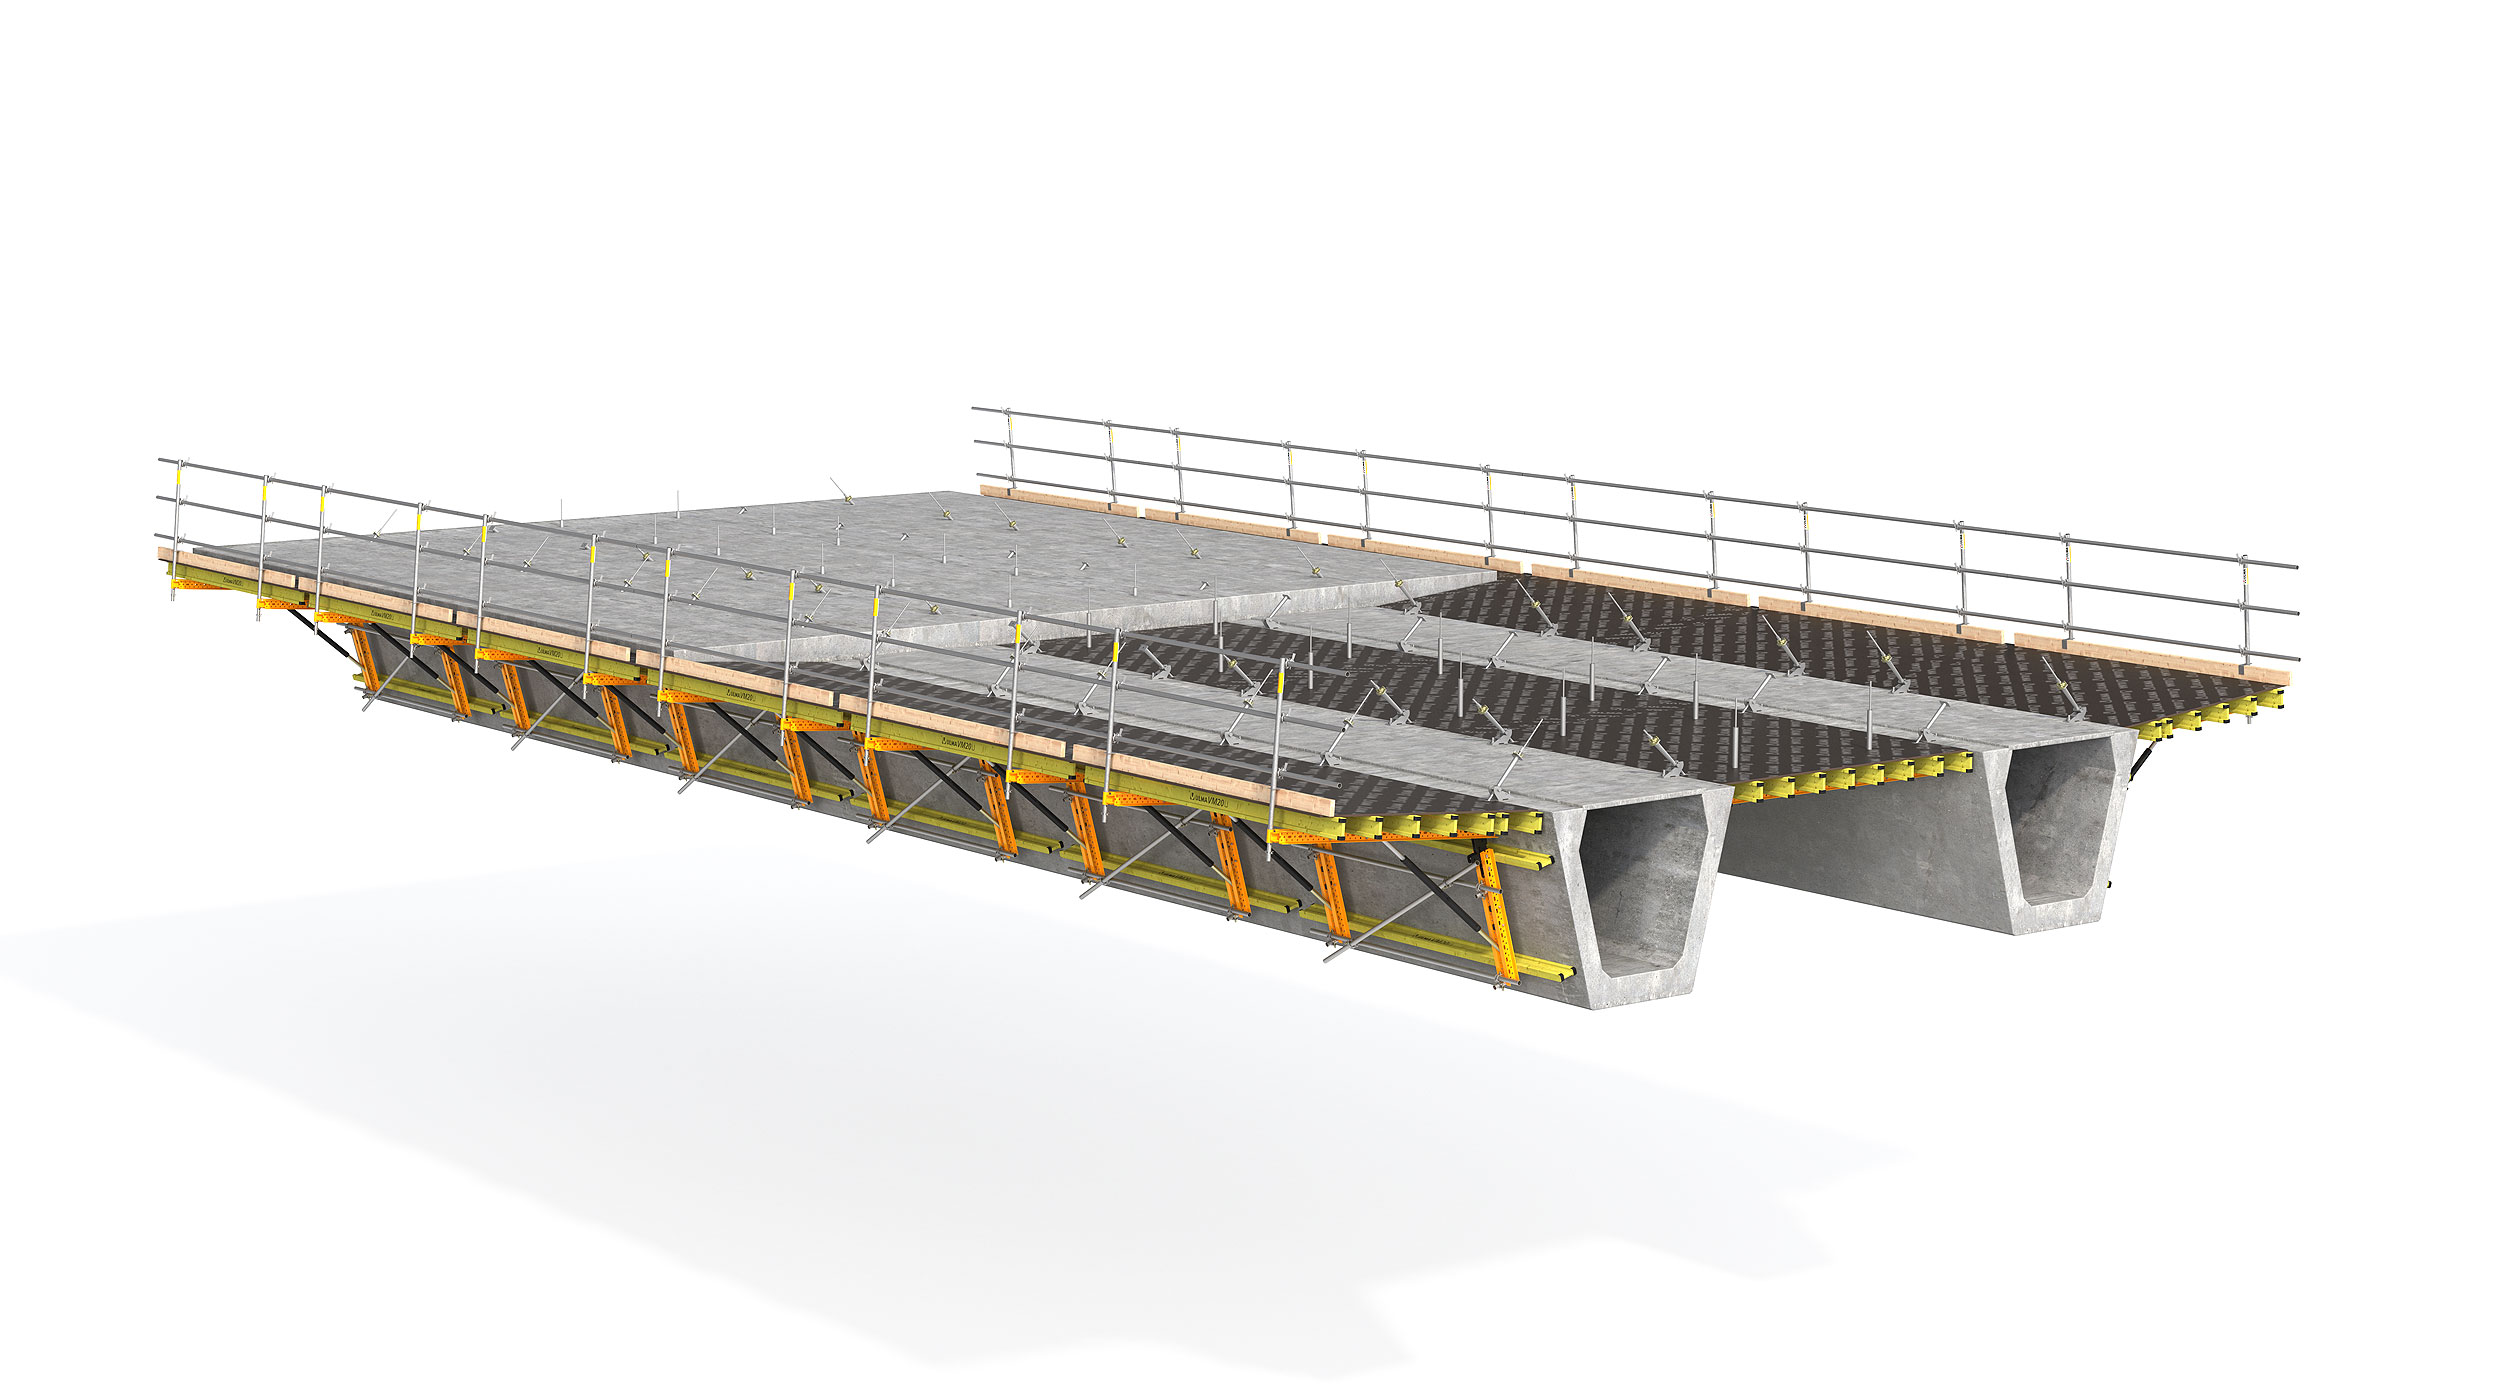 Modulare Schalung für die Flansche oder Mittelplatten von Brücken mit Metall- oder vorgefertigten Betonträgern. Highlight: die Sicherheit des Systems.